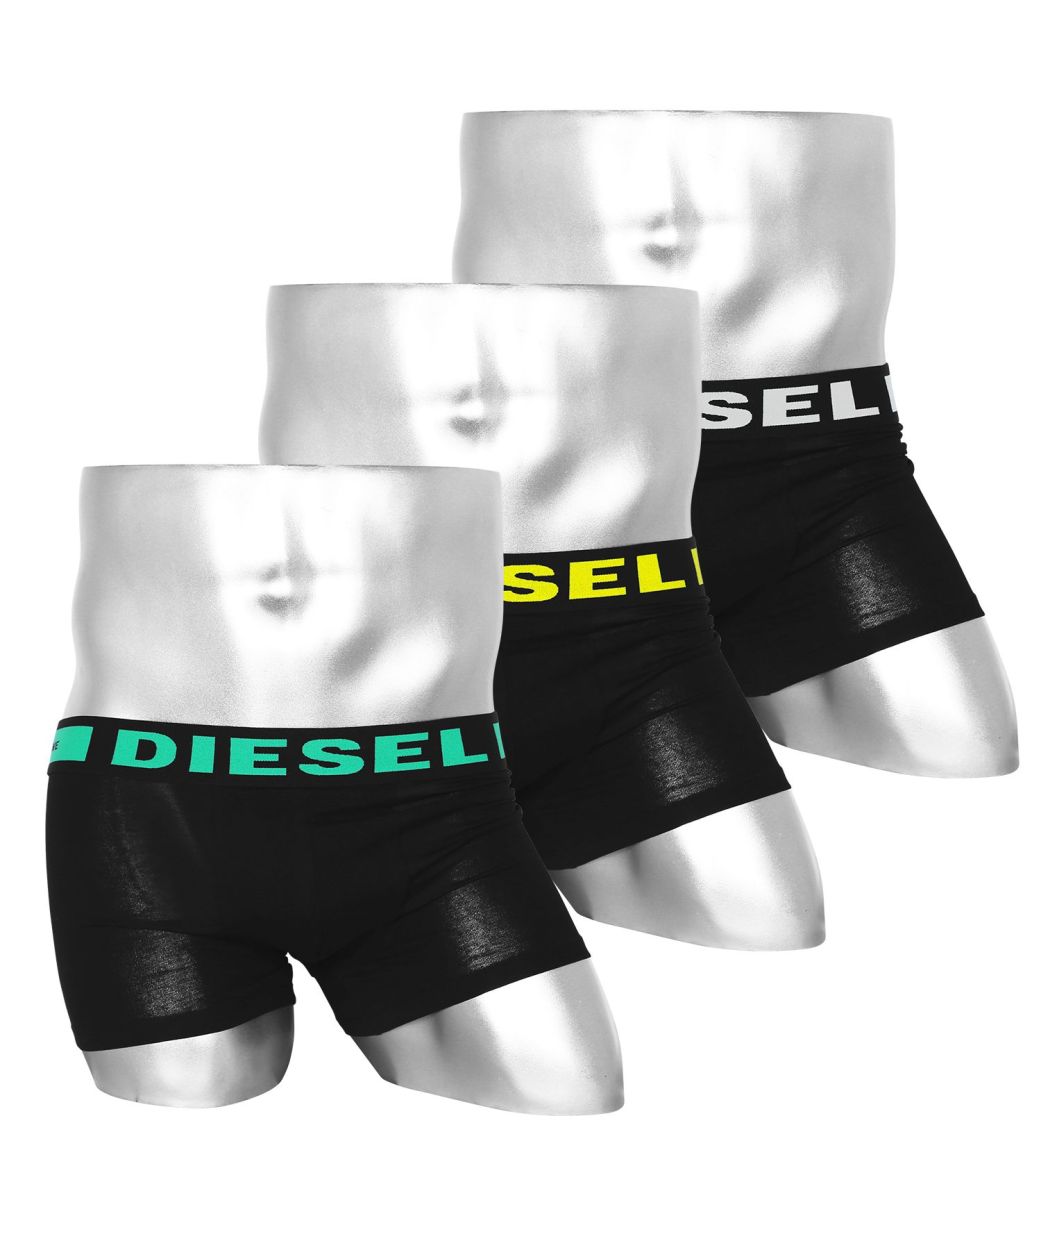 ディーゼル DIESEL ボクサーパンツ メンズ 男性 下着 パンツ 3枚セット セット かっこいい 綿 ロゴ 無地 ドット アニマル ブランド お得  おしゃれ